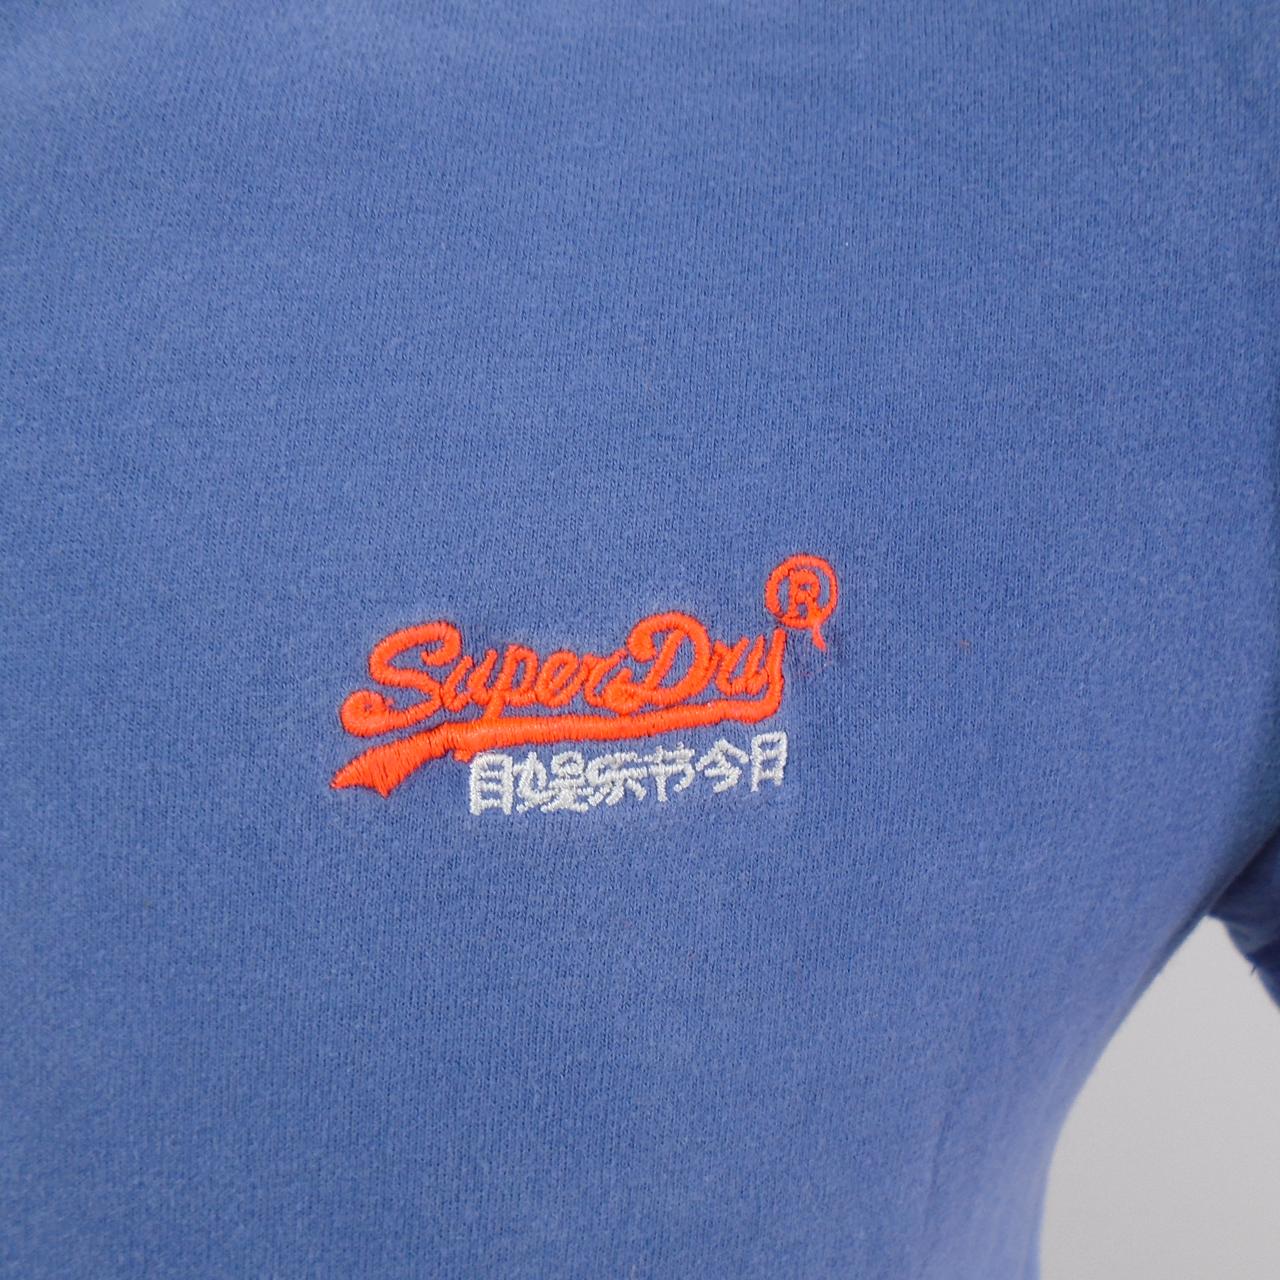 Herren-T-Shirt Superdry. Blau. S. Gebraucht. Gut